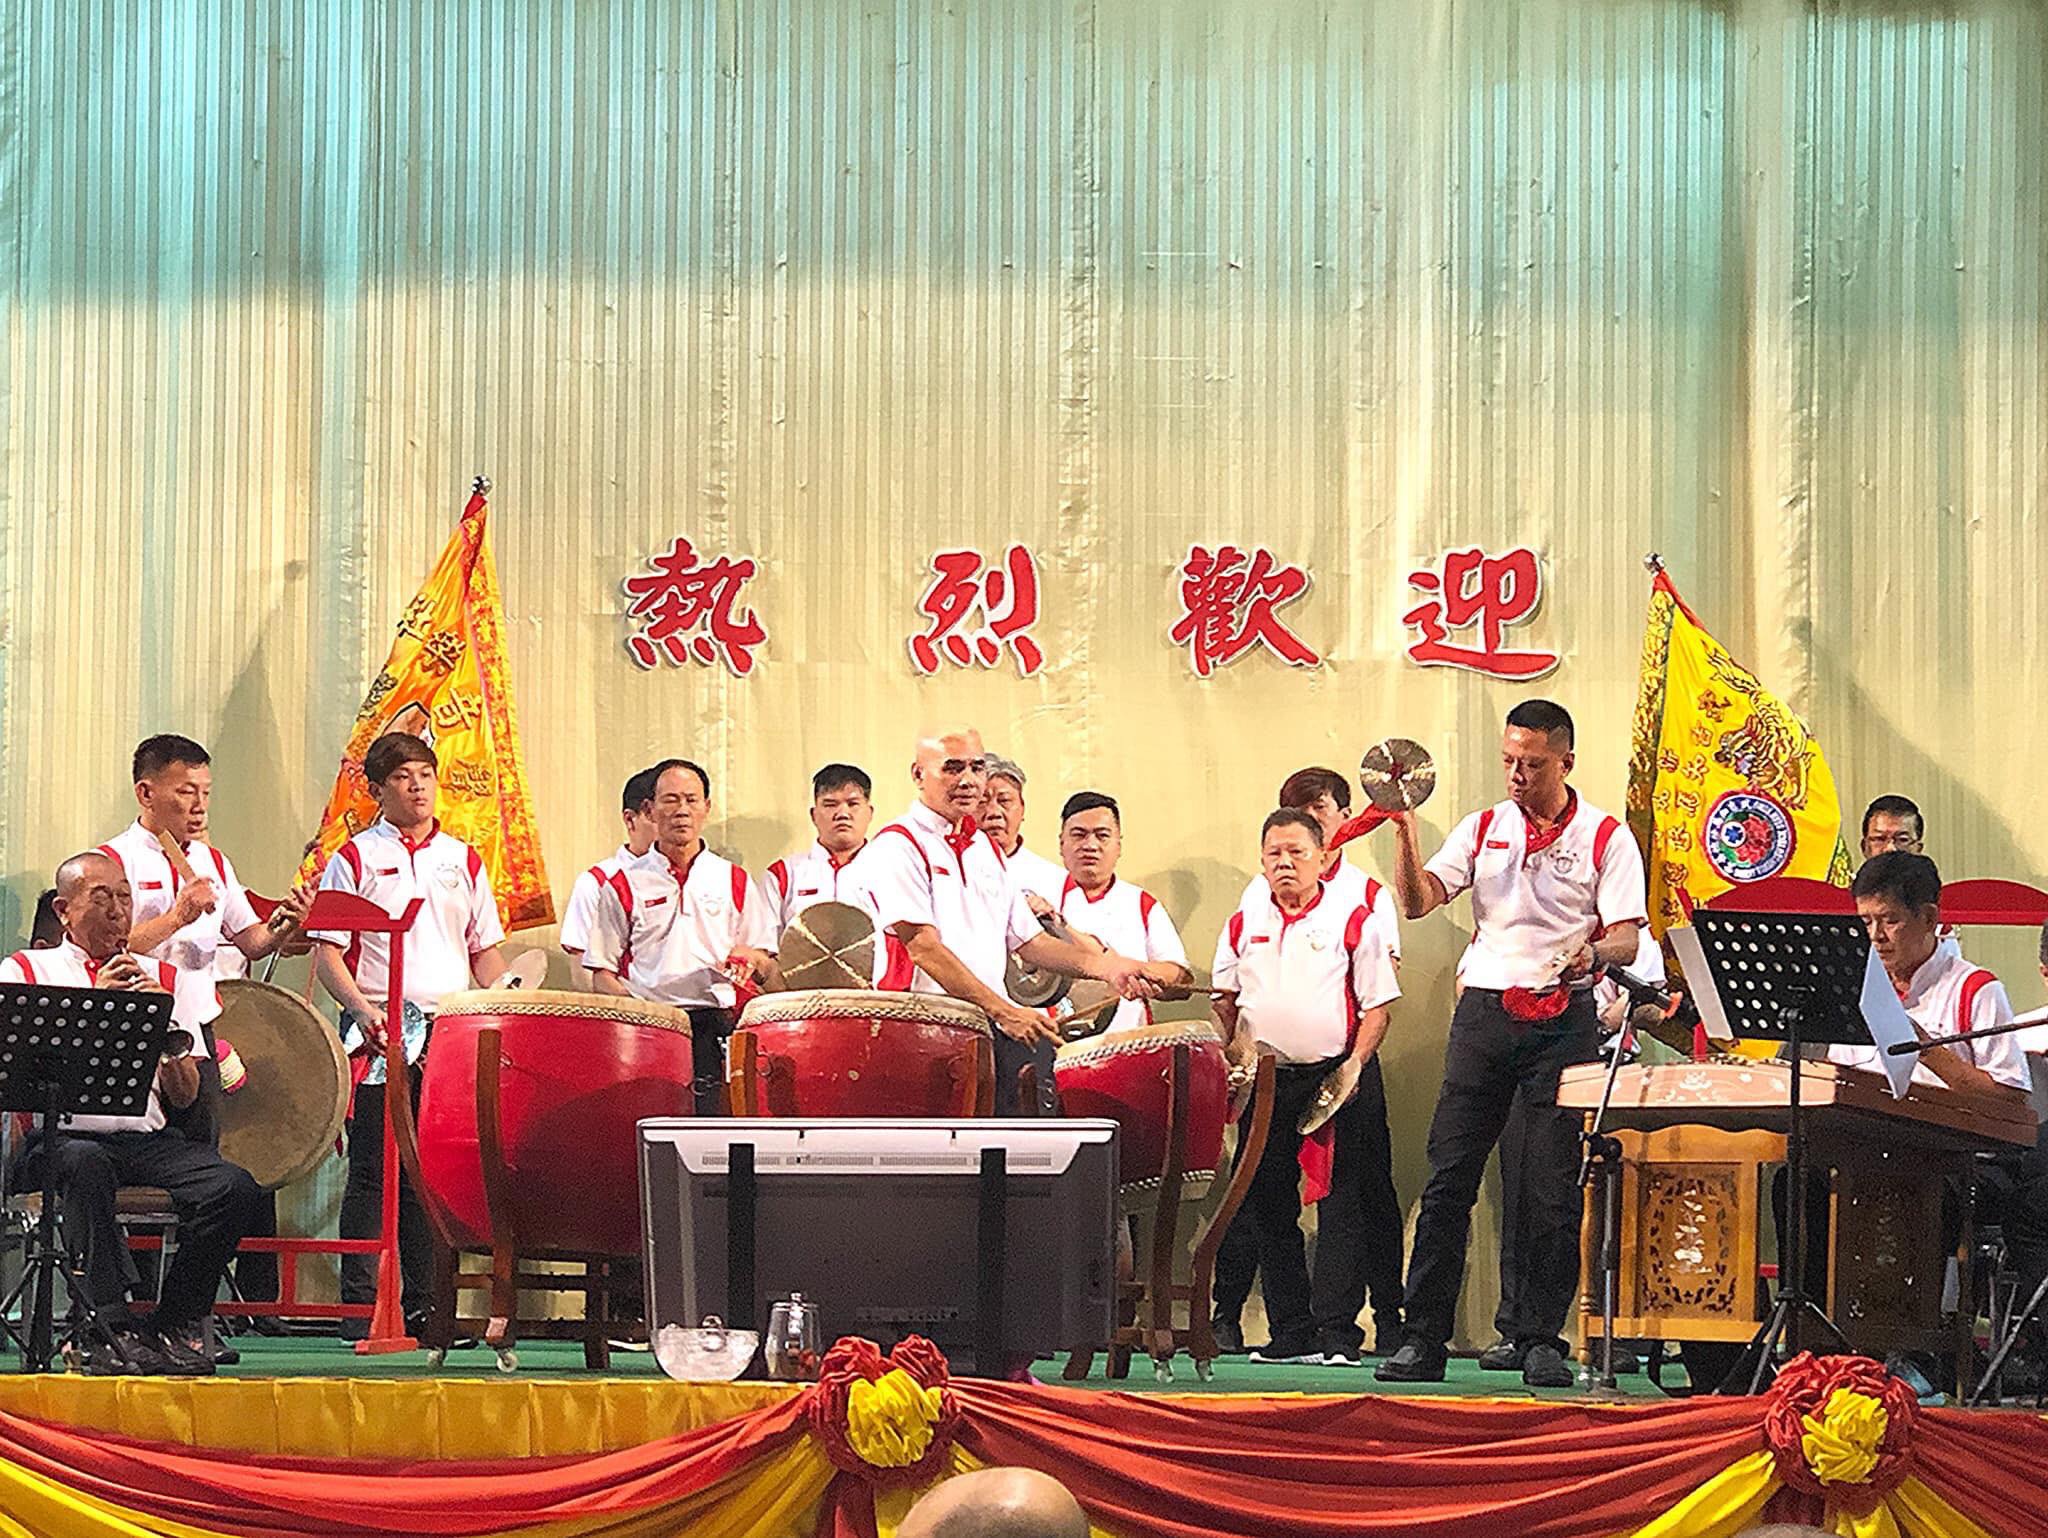 SW CHINESE MUSIC CENTER ผู้ประสานงานฝ่ายไทยและร่วมสนับสนุนเครื่องดนตรีจีนในการแสดงตลอดทริปการเดินทางมาเยือนไทยของสมาคมดนตรี Hwa Siah Musical Association และ Bukit Timah Seu Teck Sean Tong จากประเทศสิงคโปร์ จุดประสงค์เพื่อศึกษาและแลกเปลี่ยนวัฒนธรรมด้านดนตรีจีน ในวันที่10-13 พ.ค. 2019  โดยครั้งนี้ได้เยี่ยมเยือนมูลนิธิพุทธธรรมสงเคราะห์บ้านฉาง จ.ระยอง มูลนิธิป่อเต็กตึ๊ง พลับพลาไชย (ป่วงเซียงถวายหลวงปู่ไต่ฮงกง) สมาคมแต้จิ๋วแห่งประเทศไทย สมาคมเตี่ยอันแห่งประเทศไทย ชมรมดนตรีจีนหลักเทียน ได้รับการต้อนรับอย่างดีจากผู้นำและคณะผู้บริหารทั้งห้าองค์กร ตีพิมพ์หนังสือพิมพ์จีนในไทยและสิงคโปร์อย่างเป็นทางการ  ดาโต๊ะ เตียเกี่ยงอัง PBM นายกสมาคมแต้จิ๋วแห่งประเทศสิงคโปร์และผู้นำคณะมาเยือนจากสิงคโปร์มอบโล่เกียรติคุณไว้เป็นที่ระลึกแก่ศูนย์ดนตรีจีน SW CHINESE MUSIC CENTER อ.เฉินเซินเหวย ผู้บริหารรับมอบ